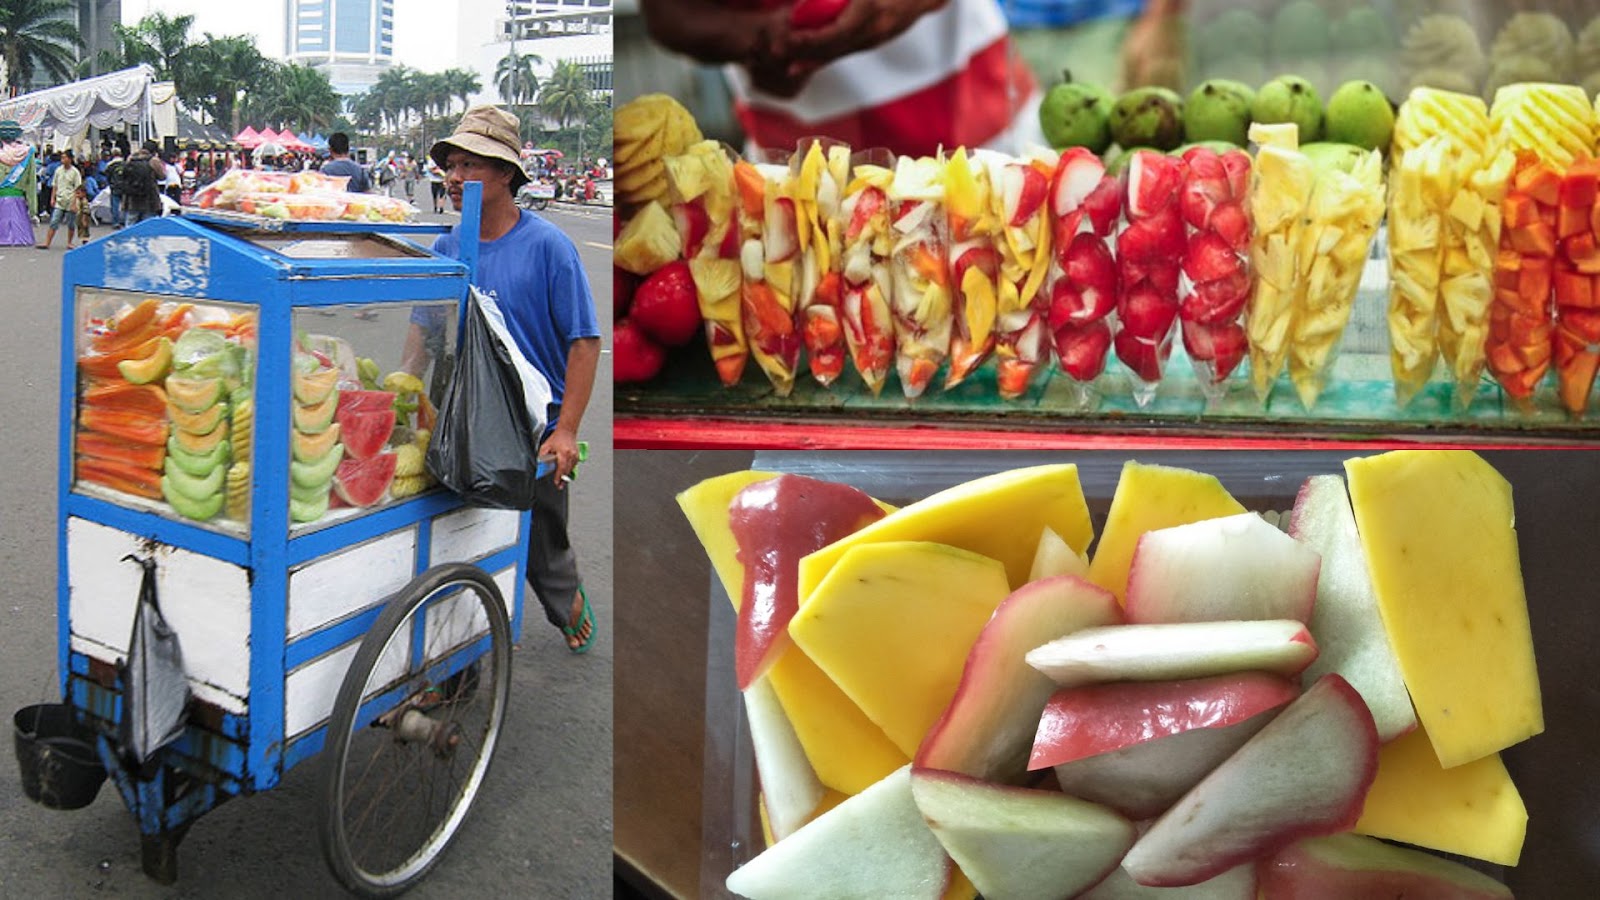 Solusi bisa makan buah murah: beli di abang rujak. (Foto: Google) 